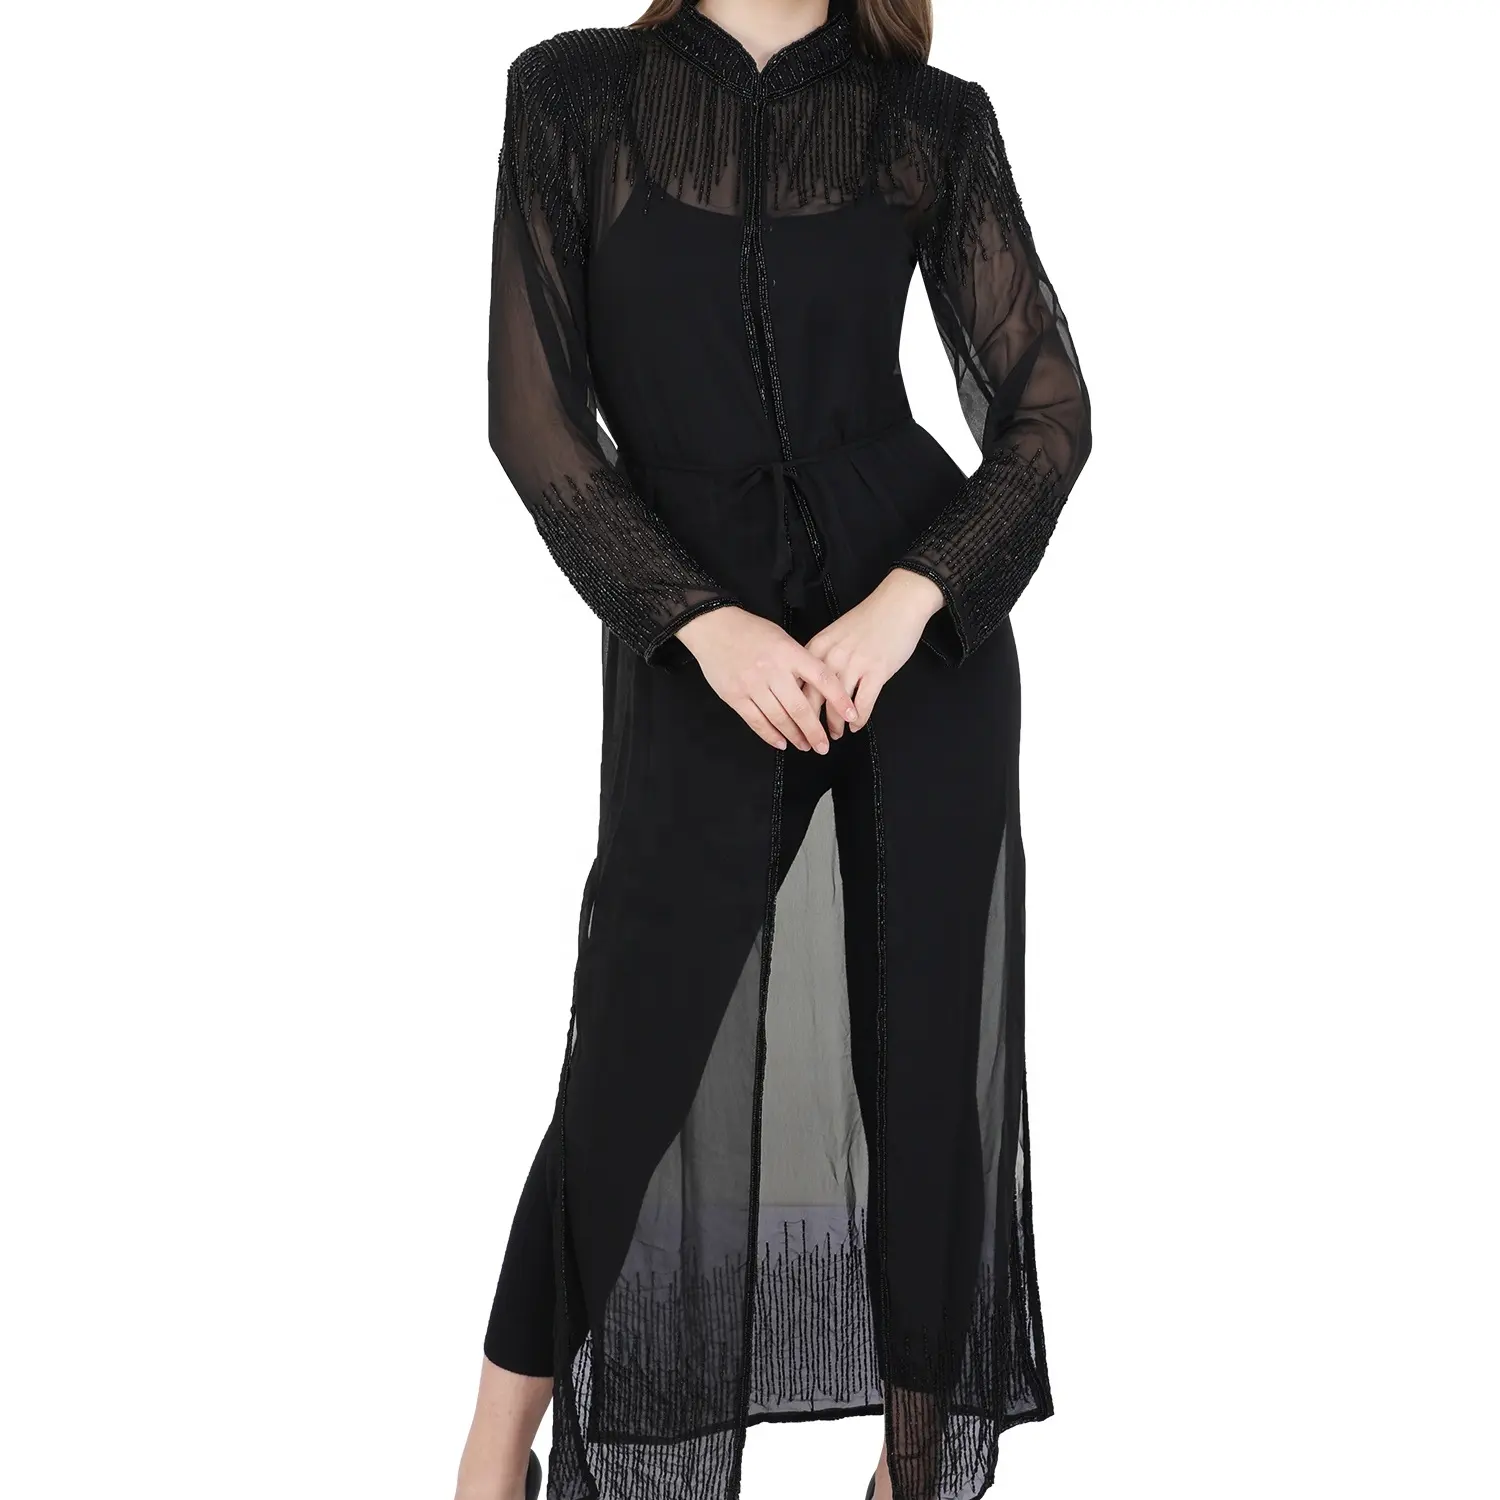 Georgette-Vestido largo de manga larga para mujer, vestido Abaya musulmán islámico, estilo UAE, abertura frontal, para fiesta